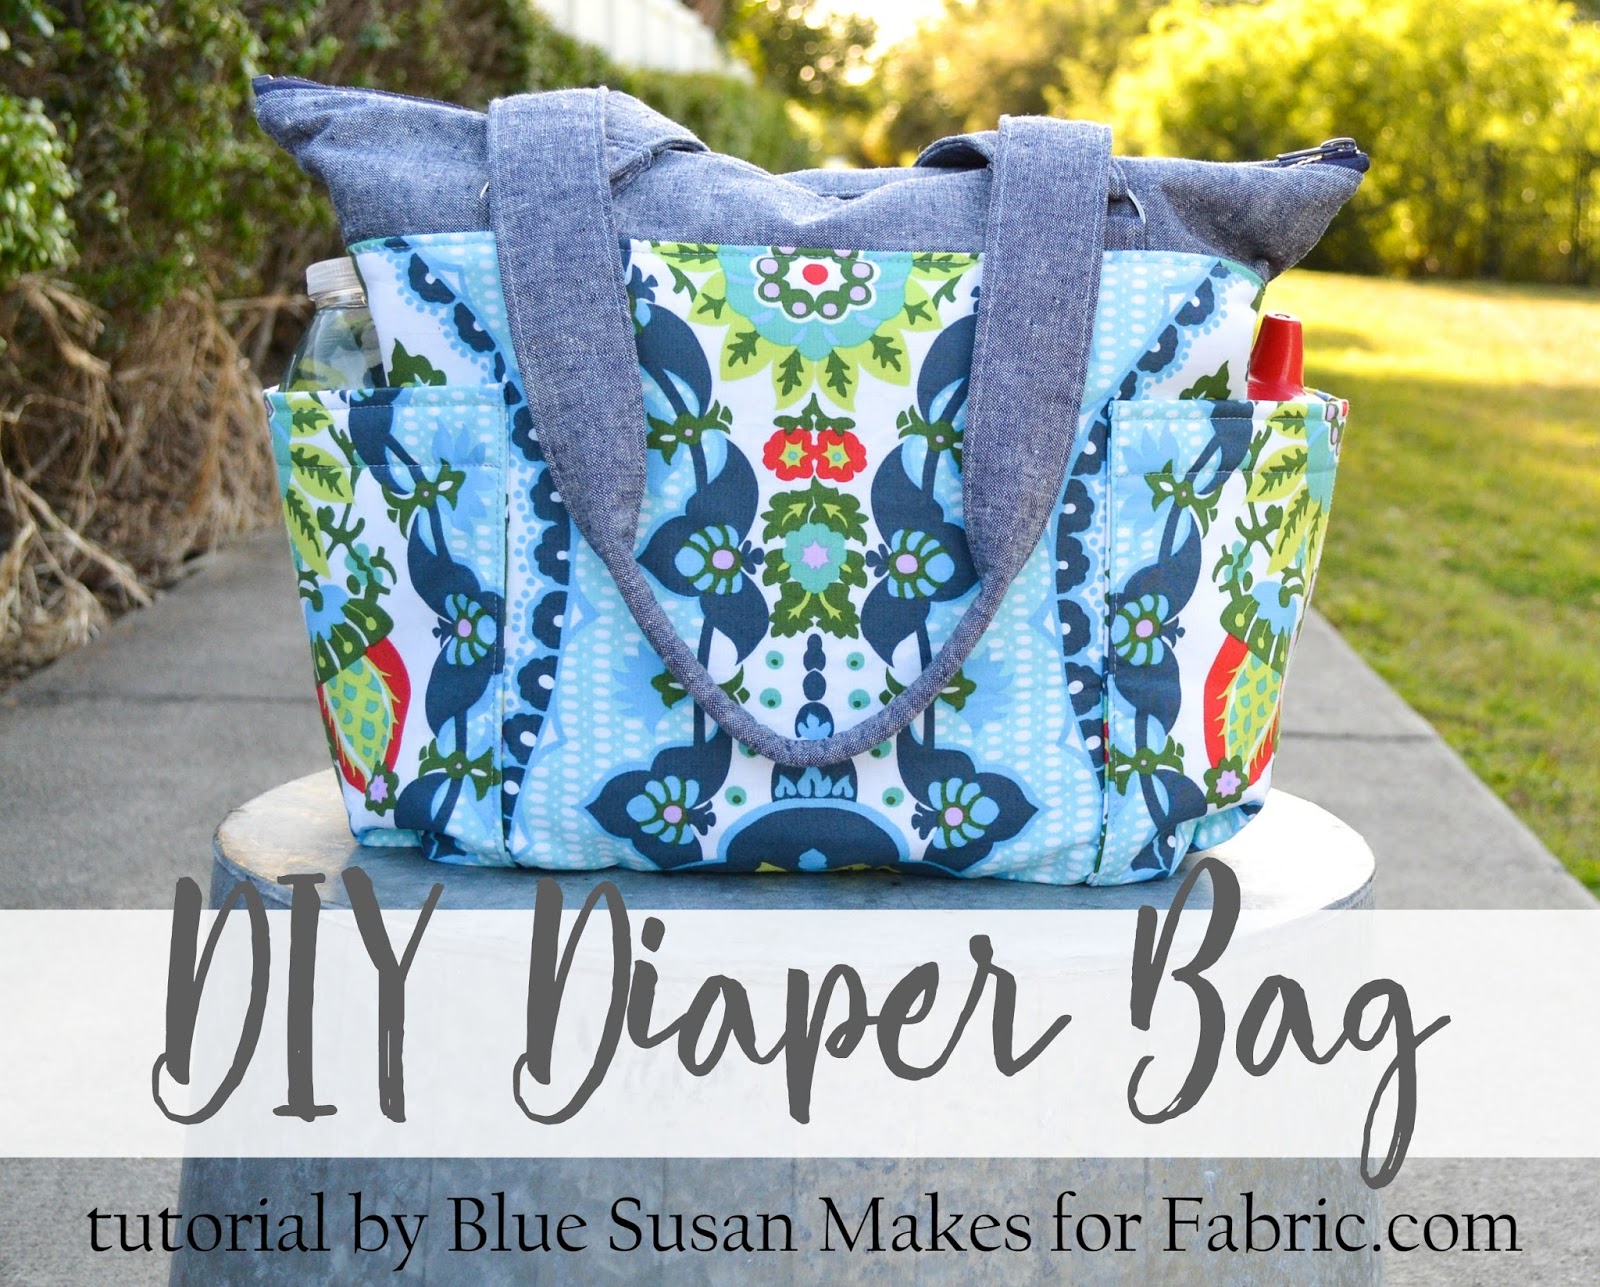 Blue Susan Makes: DIY Diaper Bag Tutorial for Fabric.com